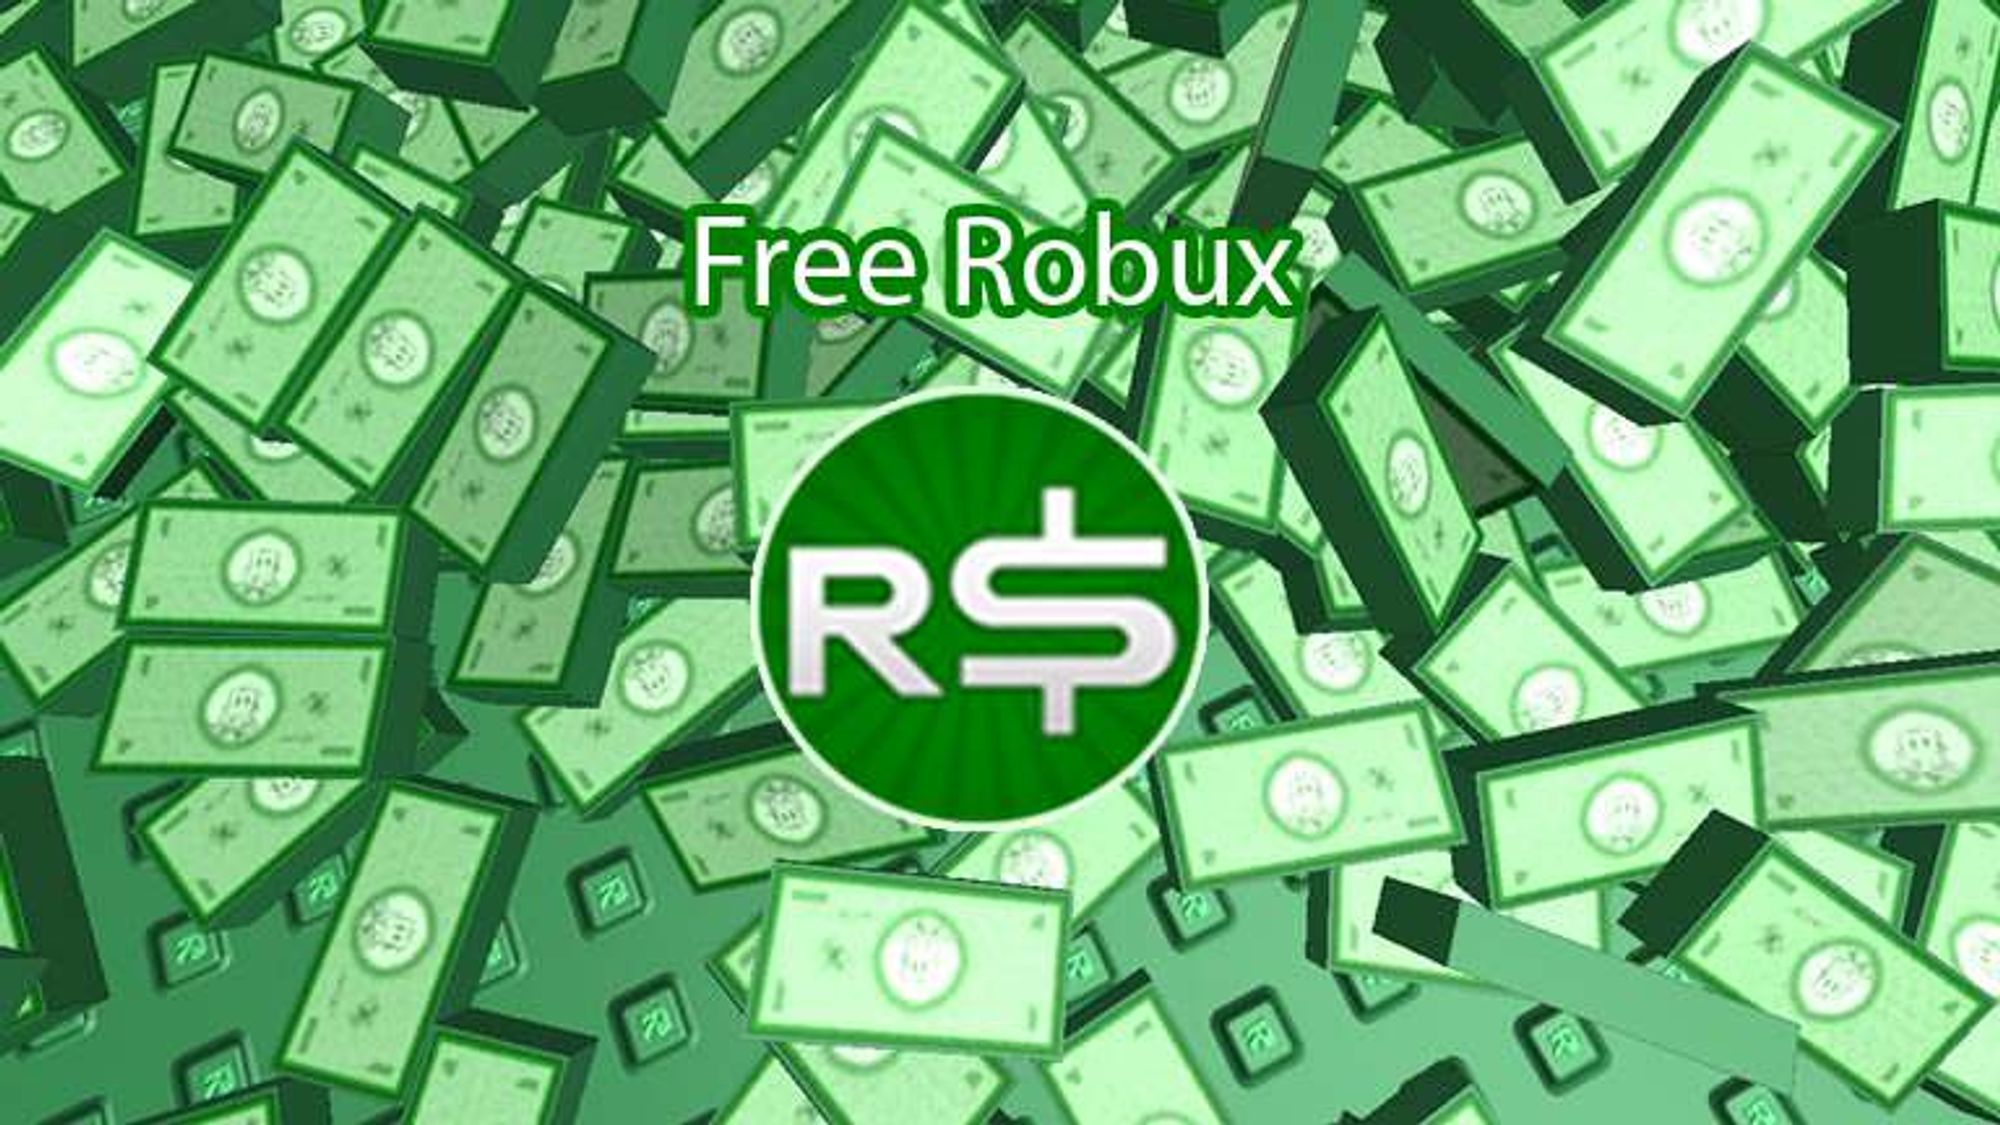 Roblox Robux Hack Free Robux Generator No Human Verification Or Survey - hcbb roblox hacks free robux hack no human verification or